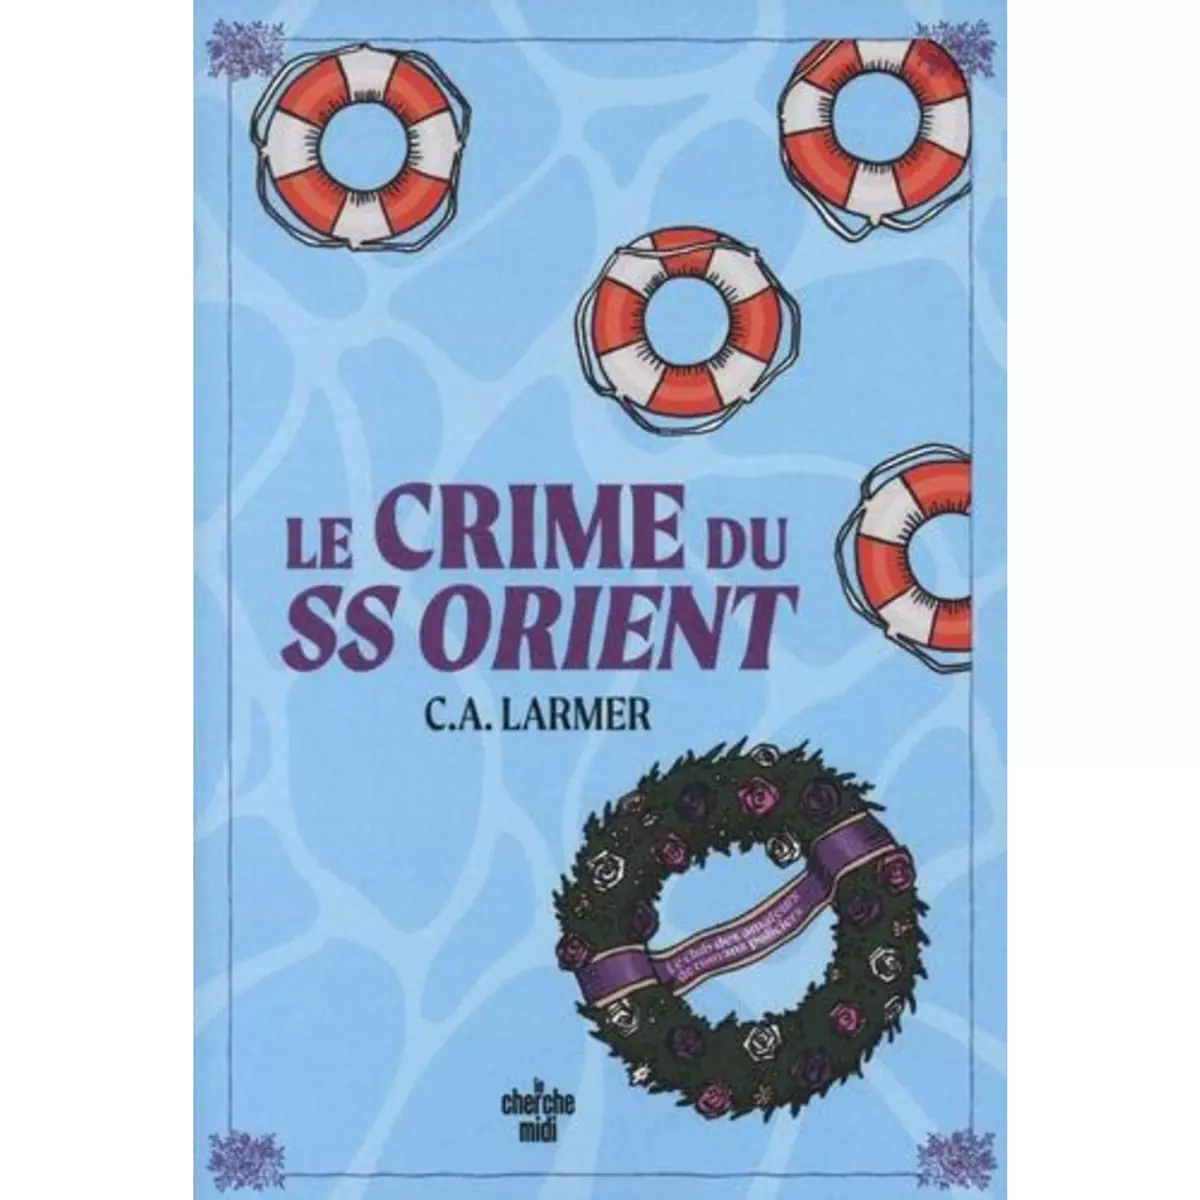  LE CLUB DES AMATEURS DE ROMANS POLICIERS TOME 2 : LE CRIME DU SS ORIENT, Larmer C.A.